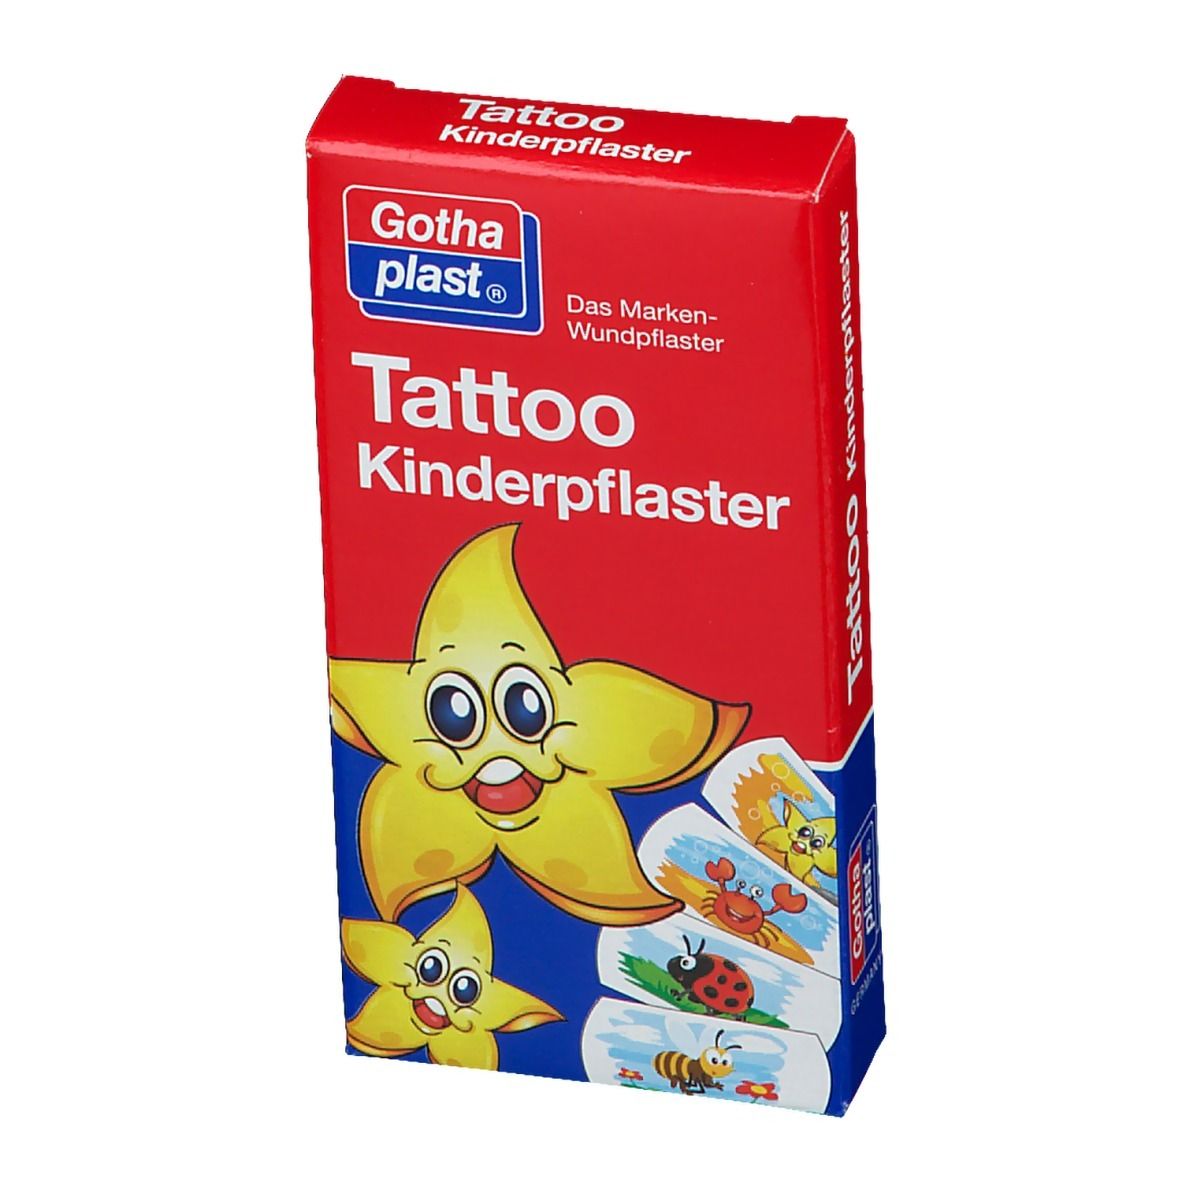 Gothaplast® Tattoo Kinderpflaster